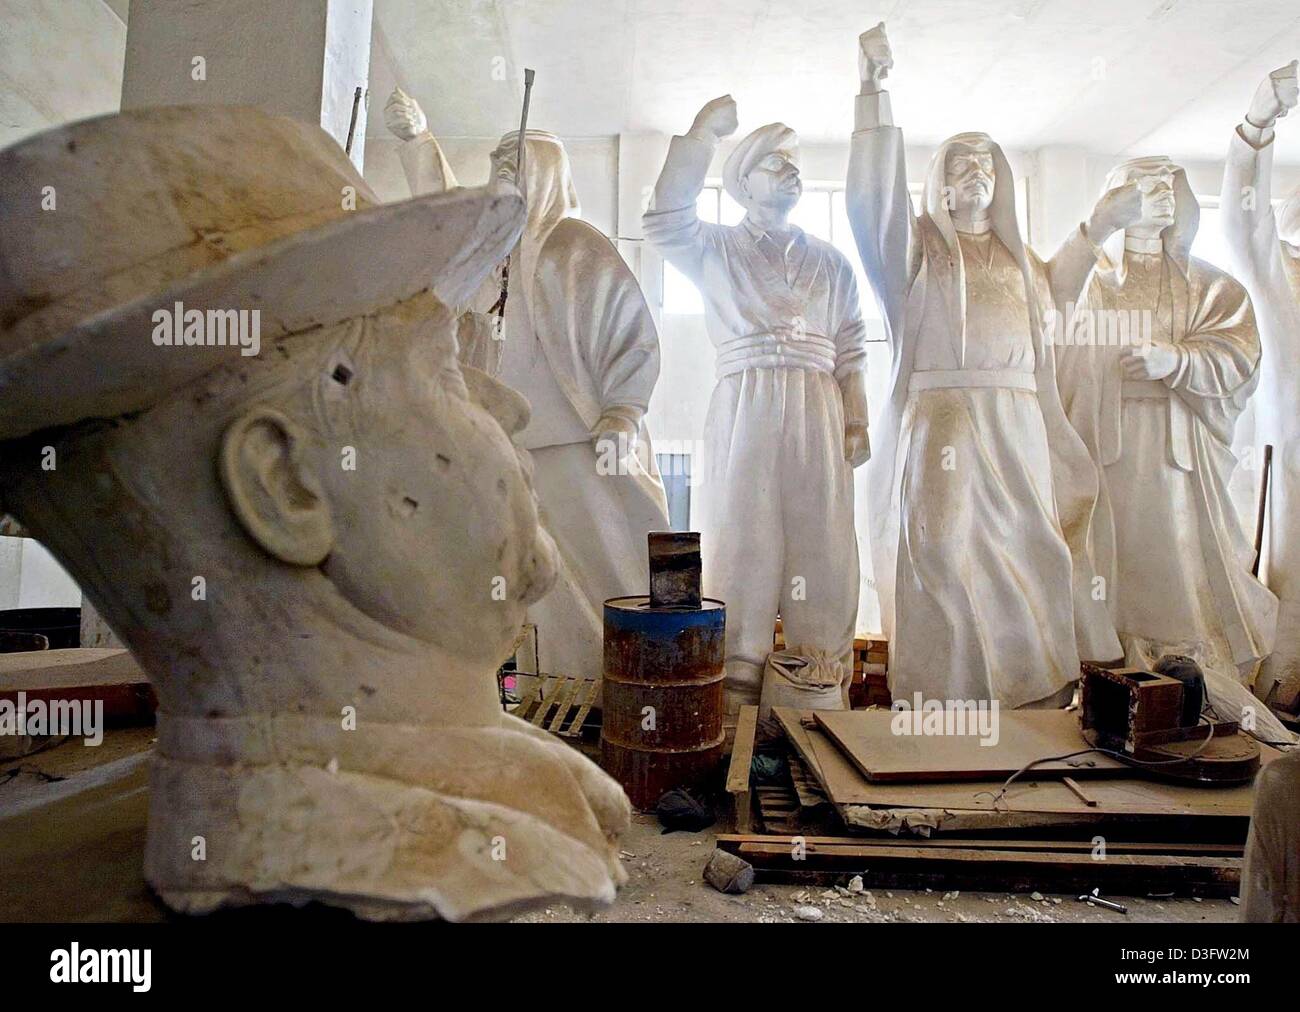 (Afp) - statues et bustes de l'ancien président irakien Saddam Hussein se tenir dans une usine qui produit des répliques du dictateur, à Bagdad, le 27 avril 2003. Le sort de Saddam Hussein et ses fils après leur régime a été renversé demeurent inconnus. Banque D'Images